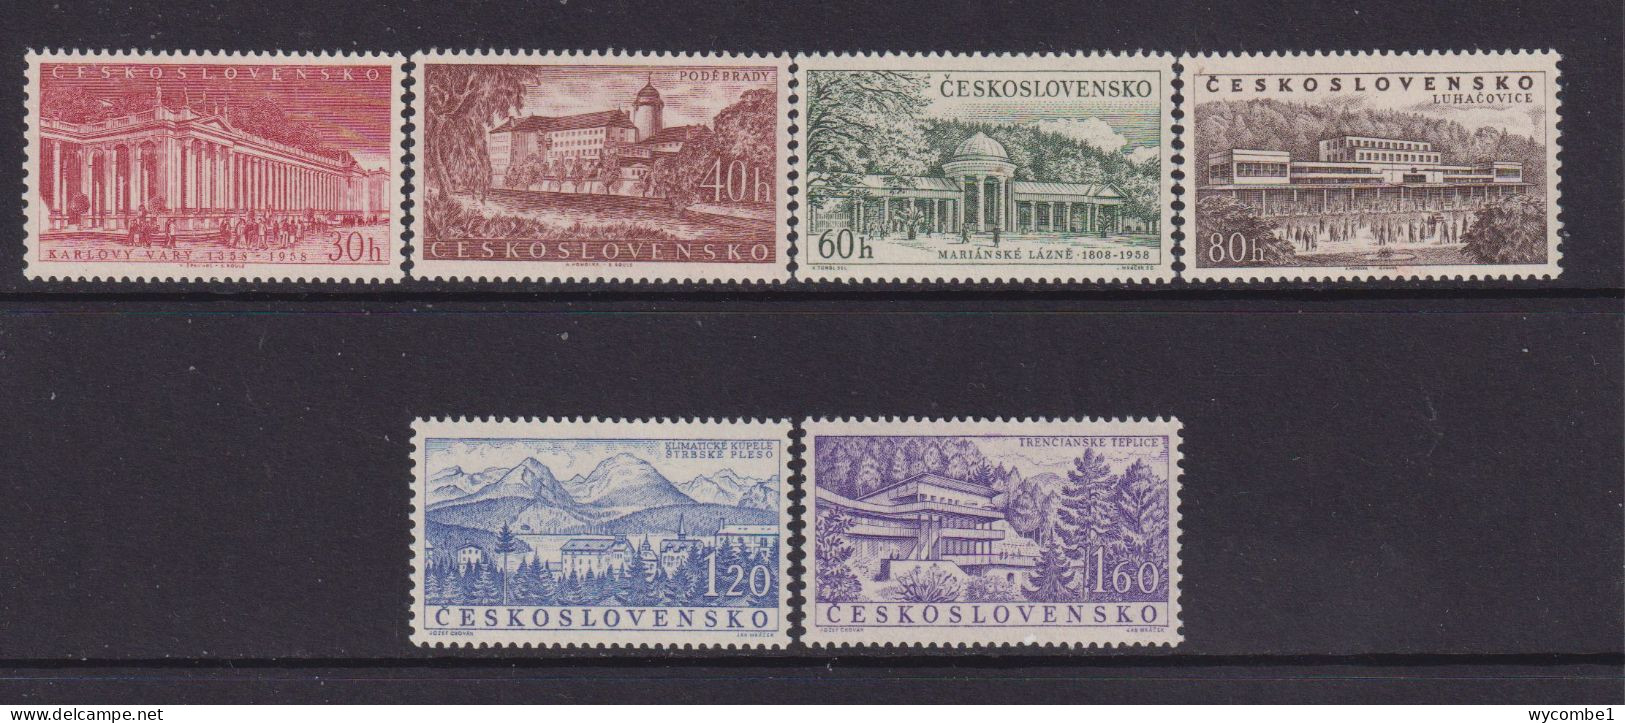 CZECHOSLOVAKIA  - 1958 Spas Set  Never Hinged Mint - Unused Stamps